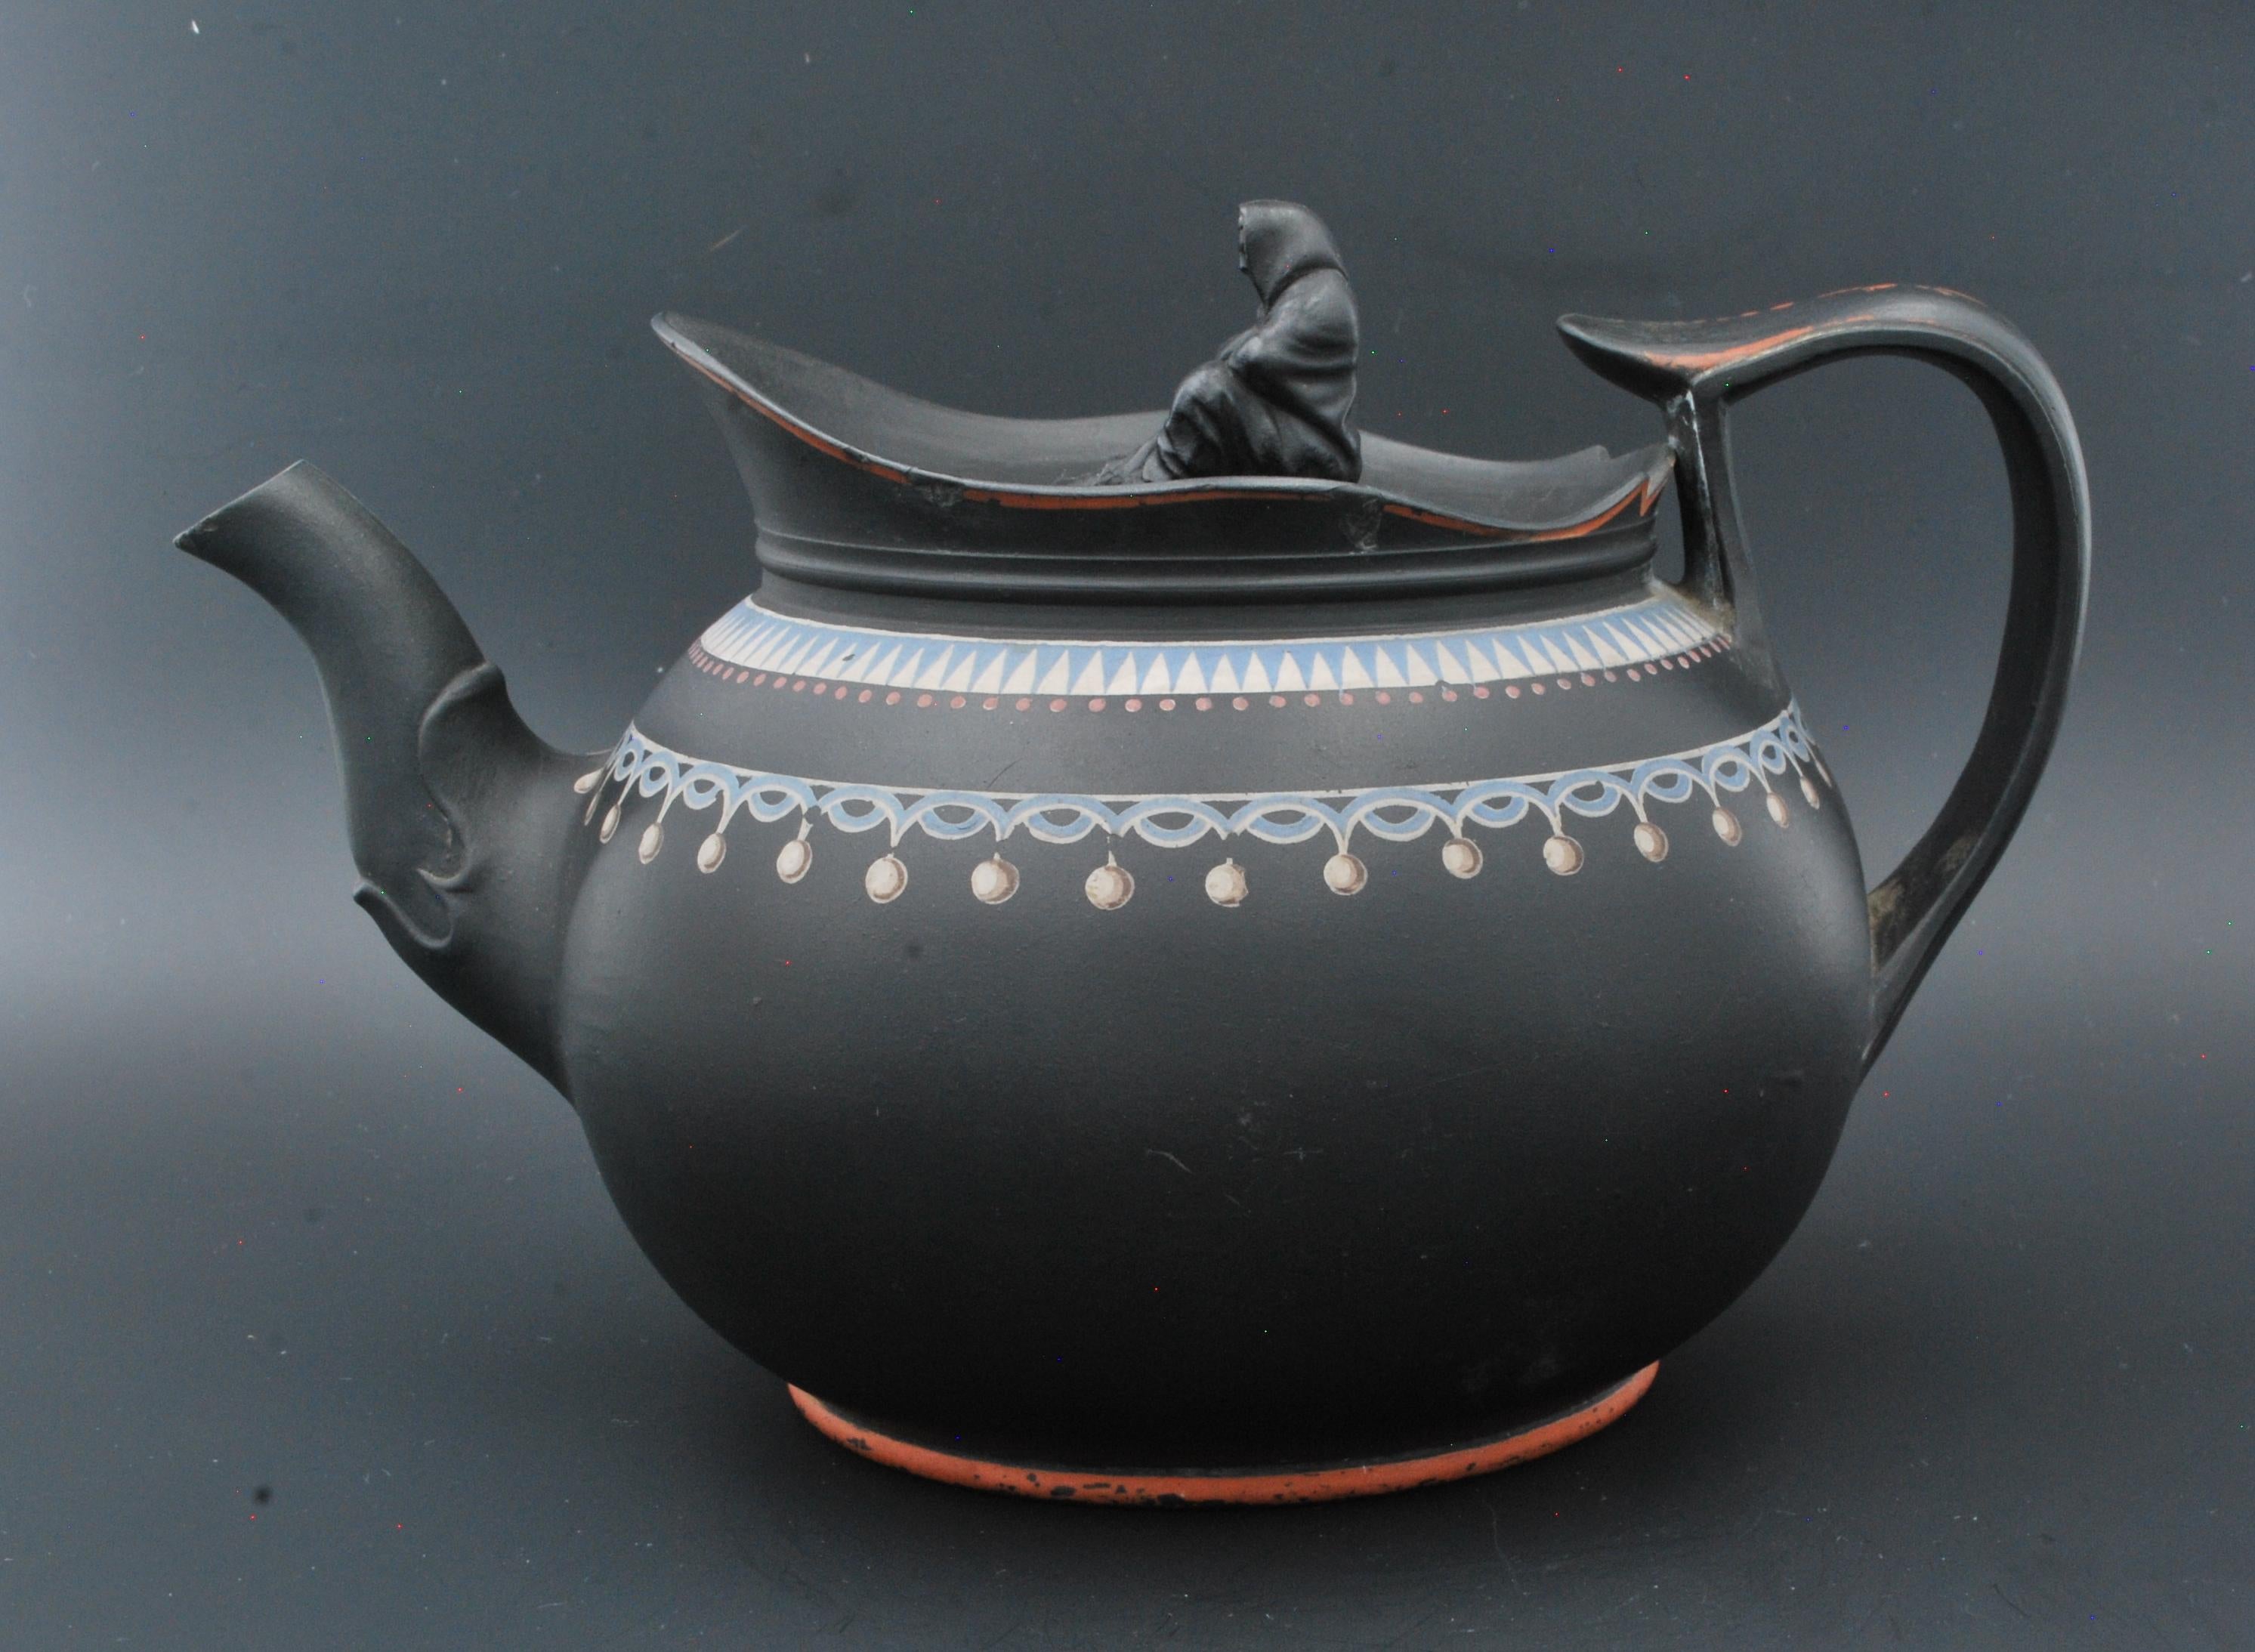 Kugelige Teekanne aus schwarzem Basalt, bemalt mit mattem Weiß, Rot und Eisblau. Nach der Form und dem allgemeinen Aussehen zu urteilen, wahrscheinlich von Spode in Anlehnung an Wedgwood-Designs aus dieser Zeit.